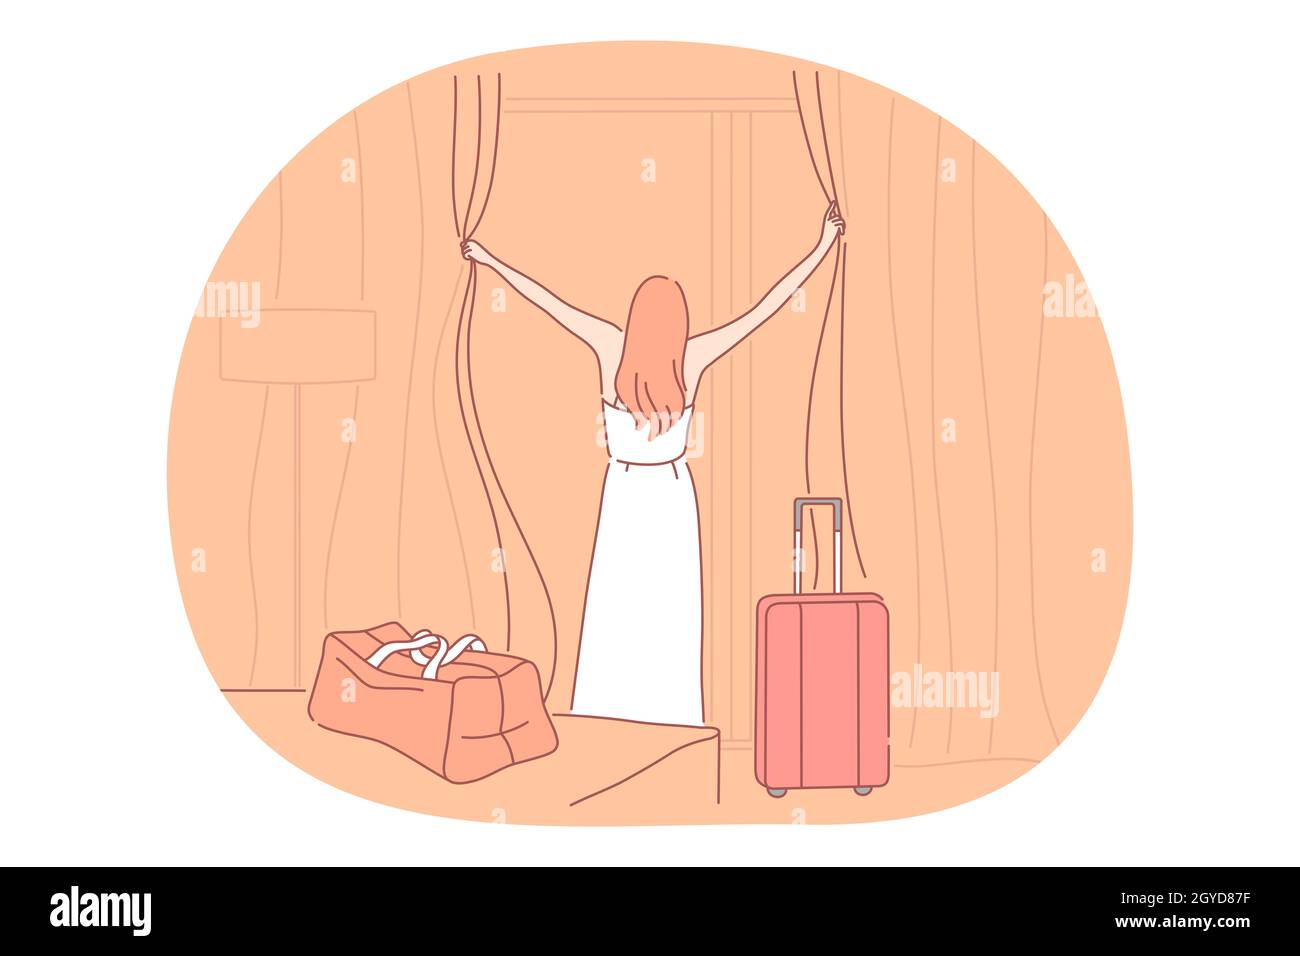 Reisen mit Gepäck, Urlaub und Reise mit Koffer Konzept. Junge Frau Reisende Touristen stehen und öffnen Hotelfenster am Ziel p Stockfoto